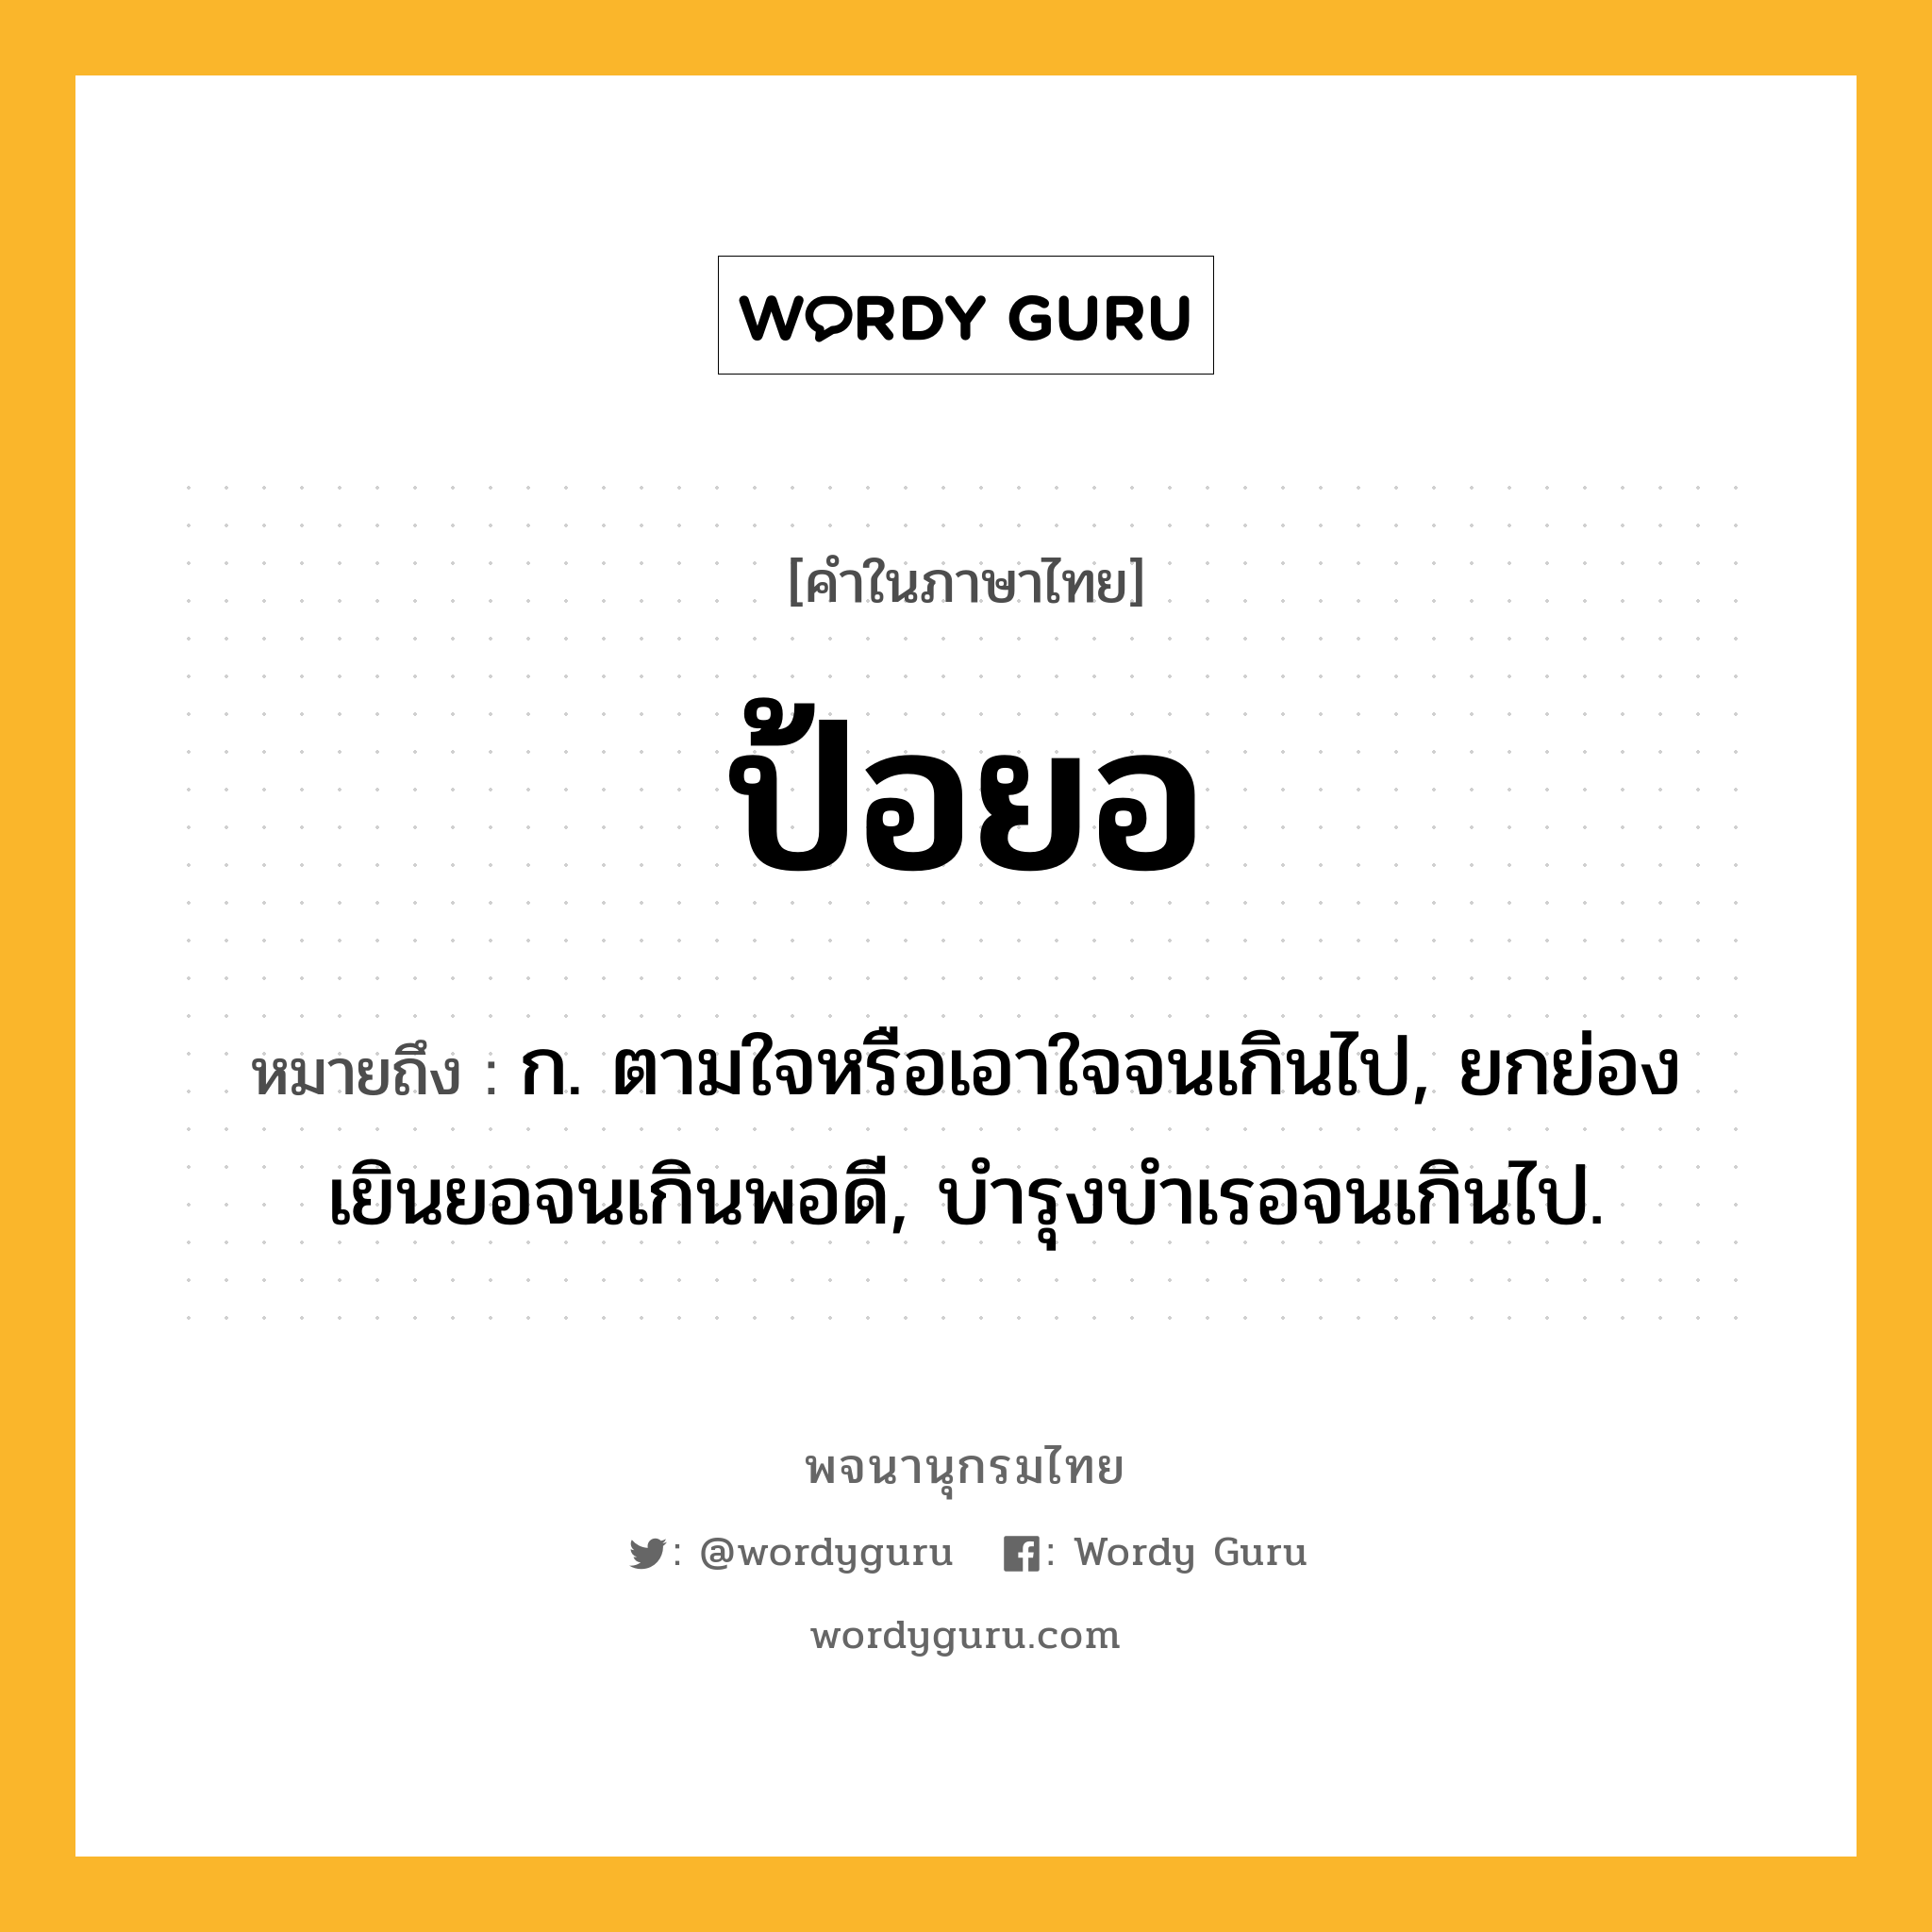 ป้อยอ ความหมาย หมายถึงอะไร?, คำในภาษาไทย ป้อยอ หมายถึง ก. ตามใจหรือเอาใจจนเกินไป, ยกย่องเยินยอจนเกินพอดี, บํารุงบําเรอจนเกินไป.